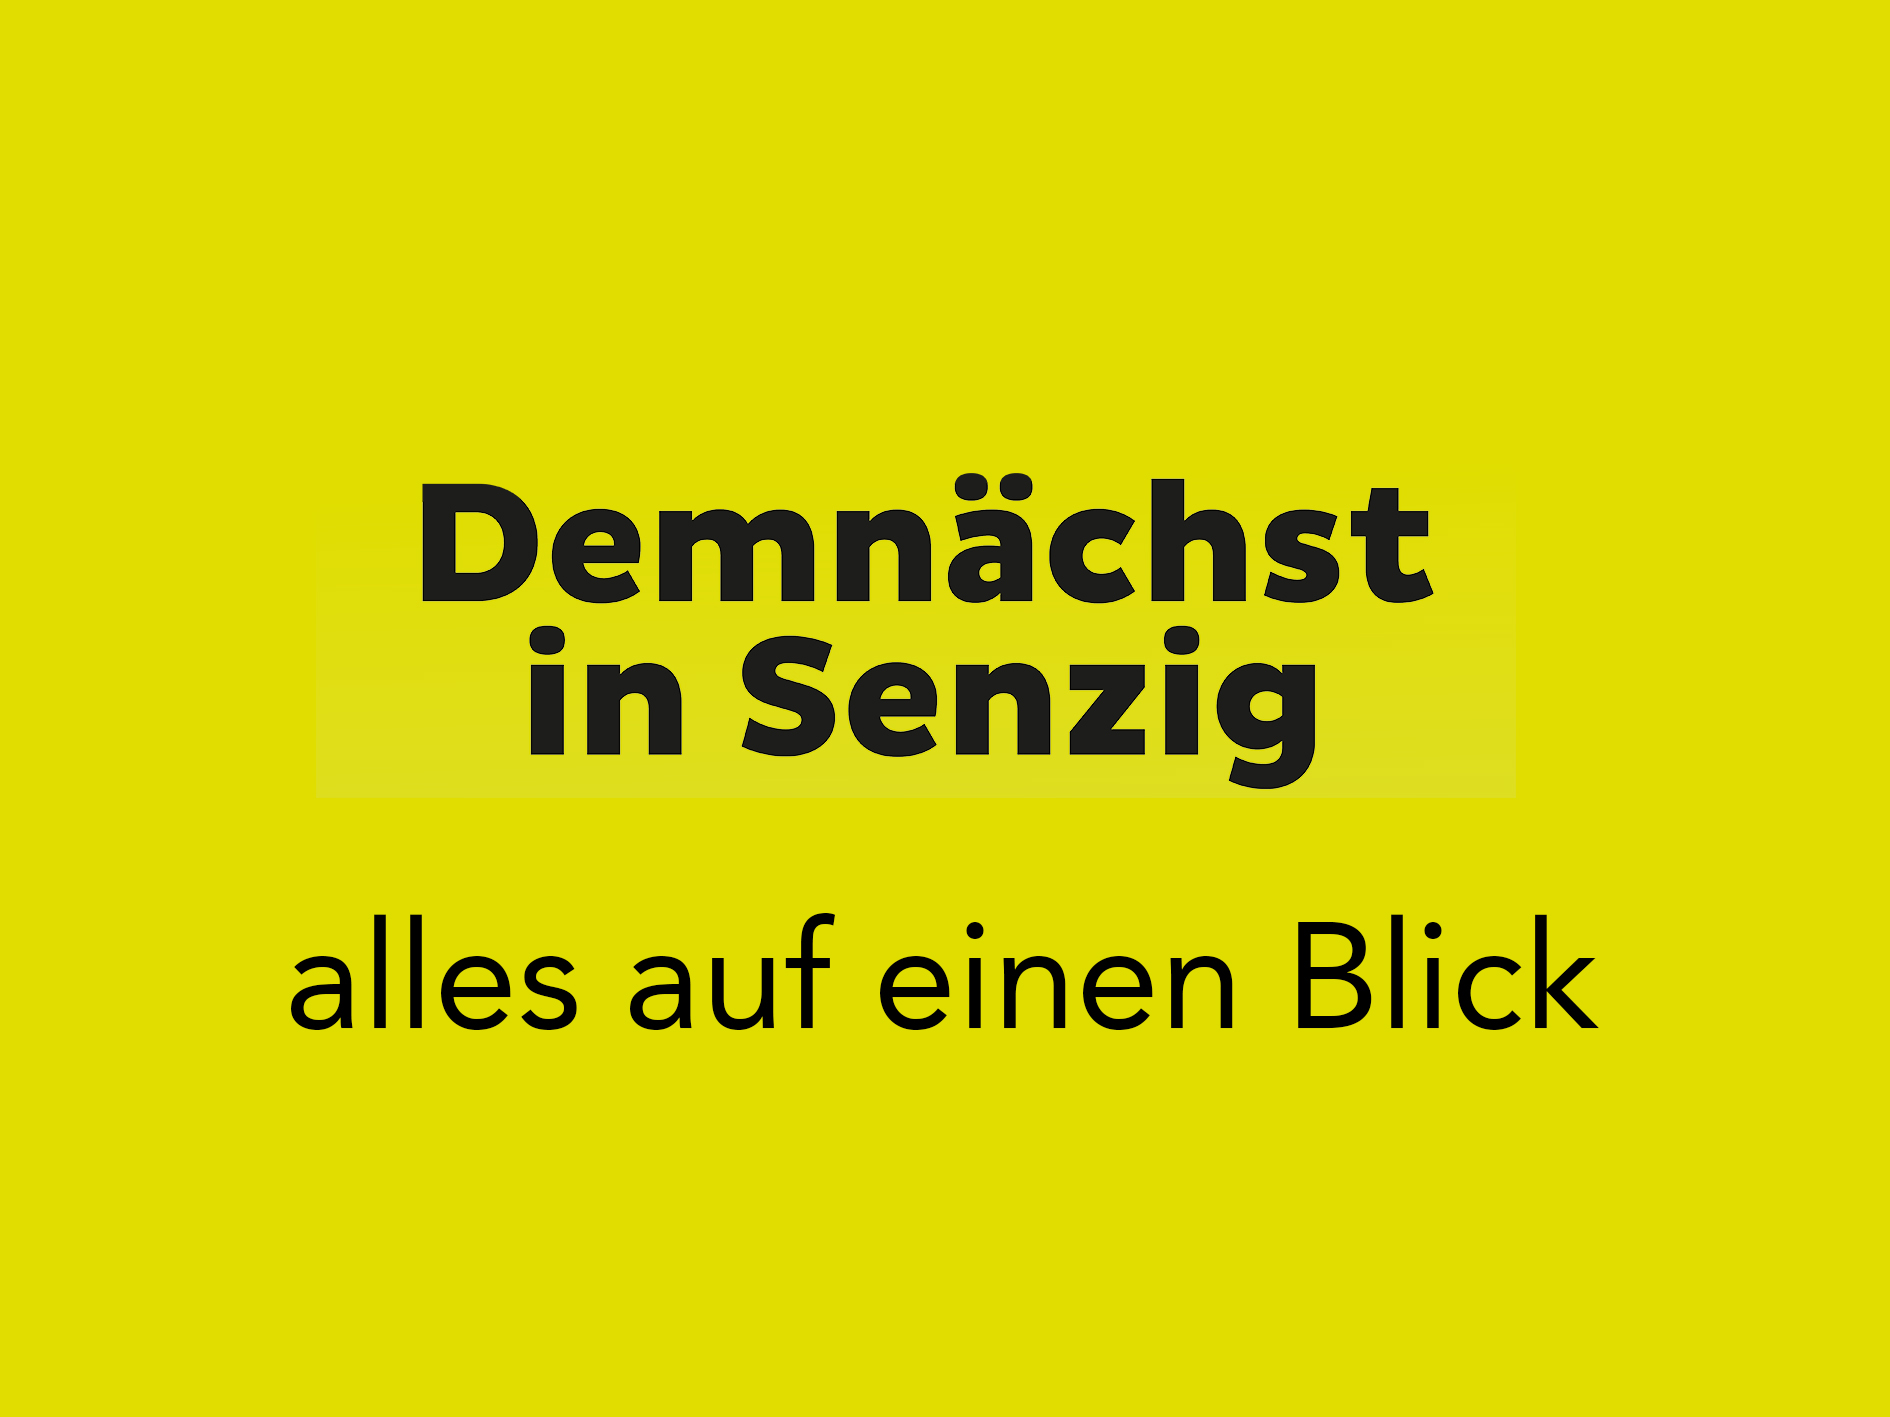 Senzig_Demnaechst